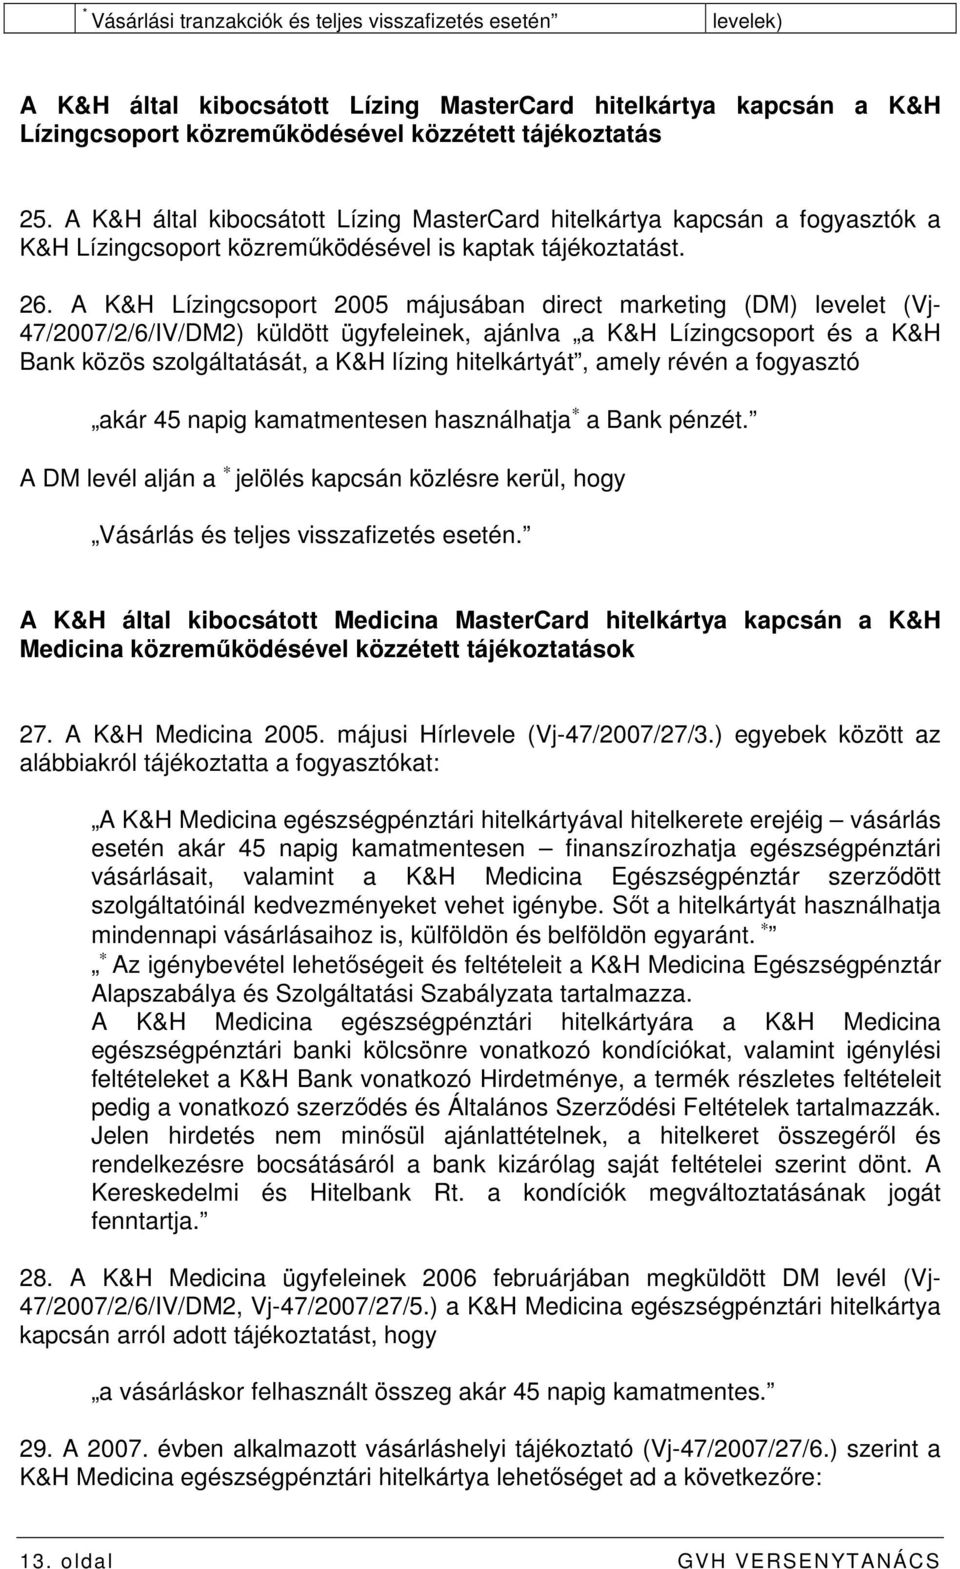 A K&H Lízingcsoport 2005 májusában direct marketing (DM) levelet (Vj- 47/2007/2/6/IV/DM2) küldött ügyfeleinek, ajánlva a K&H Lízingcsoport és a K&H Bank közös szolgáltatását, a K&H lízing